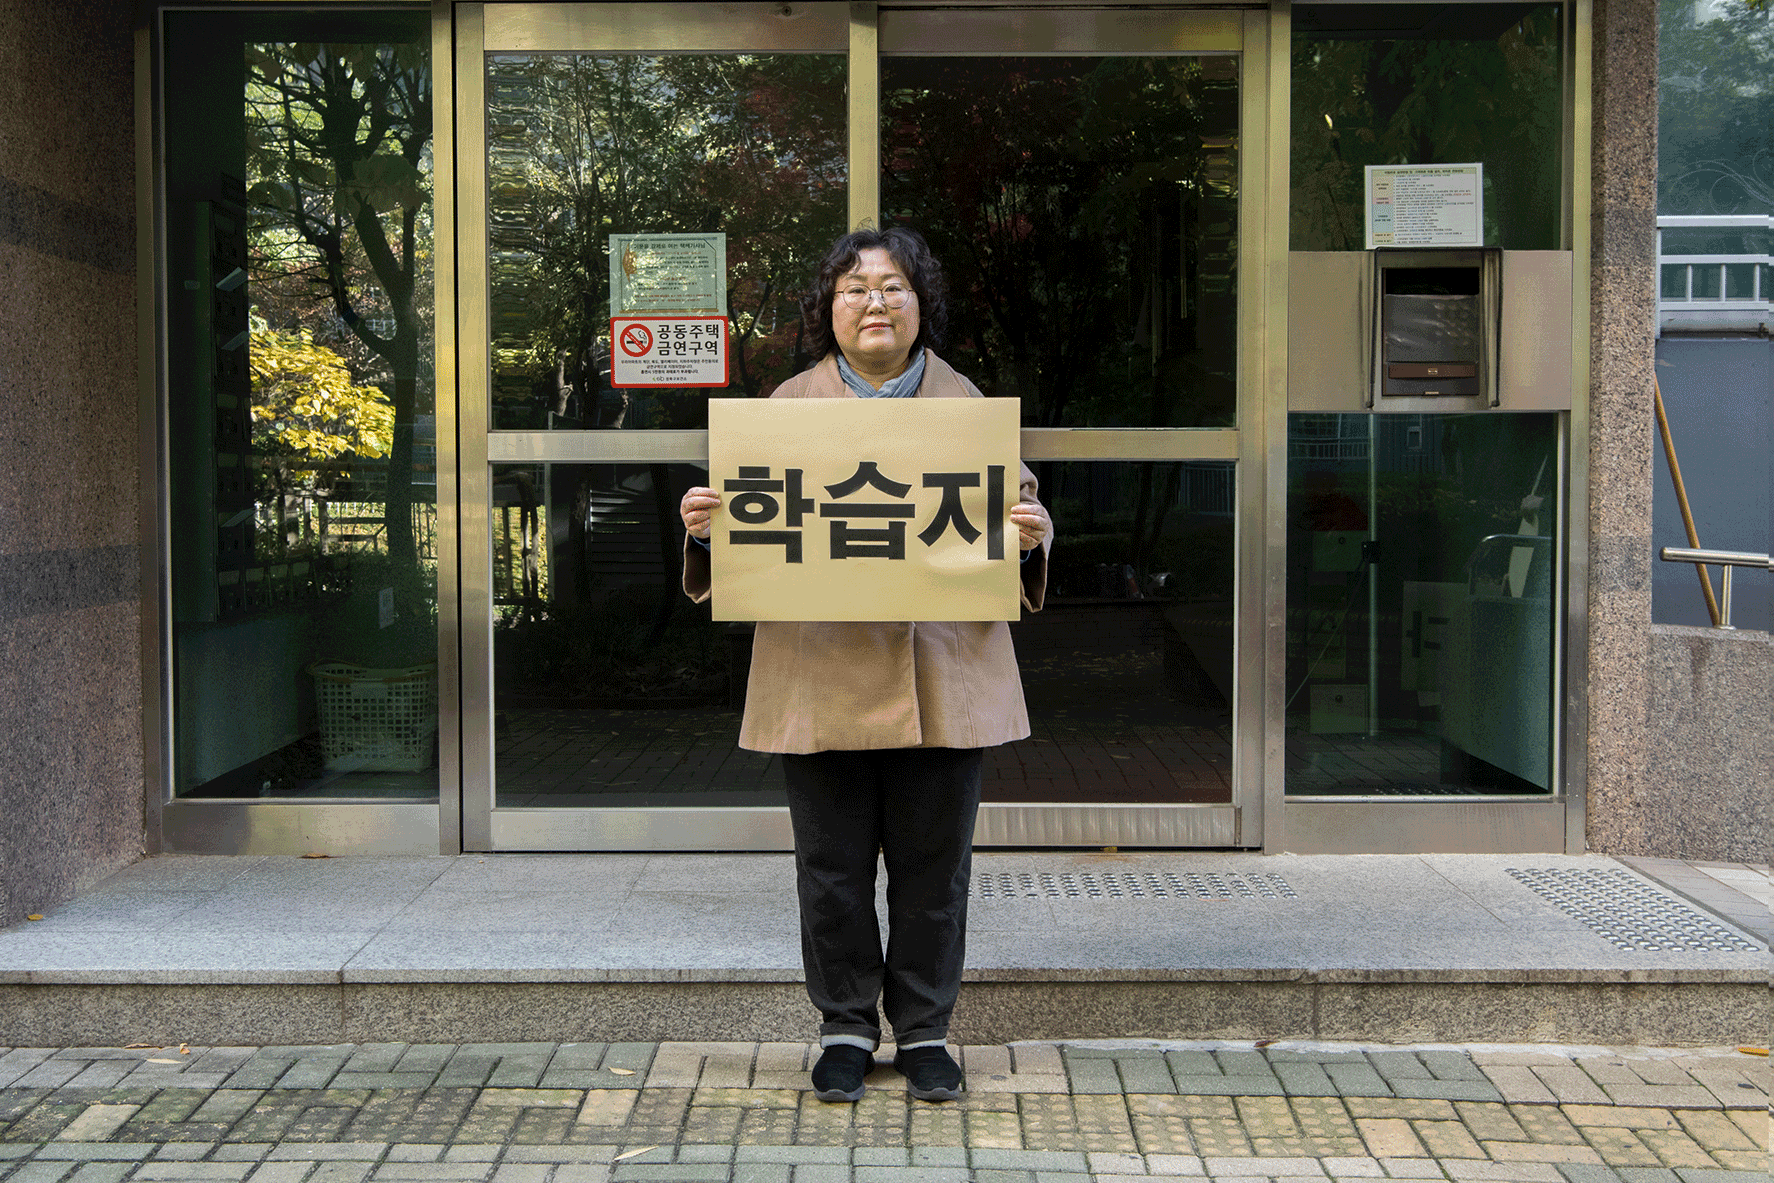 지난 11일 서울 성북구 한 아파트 단지에서 대교 눈높이 교사 이성주(52)씨가 '학습지 교사도 노동자다'라고 적힌 피켓을 들고 있다.